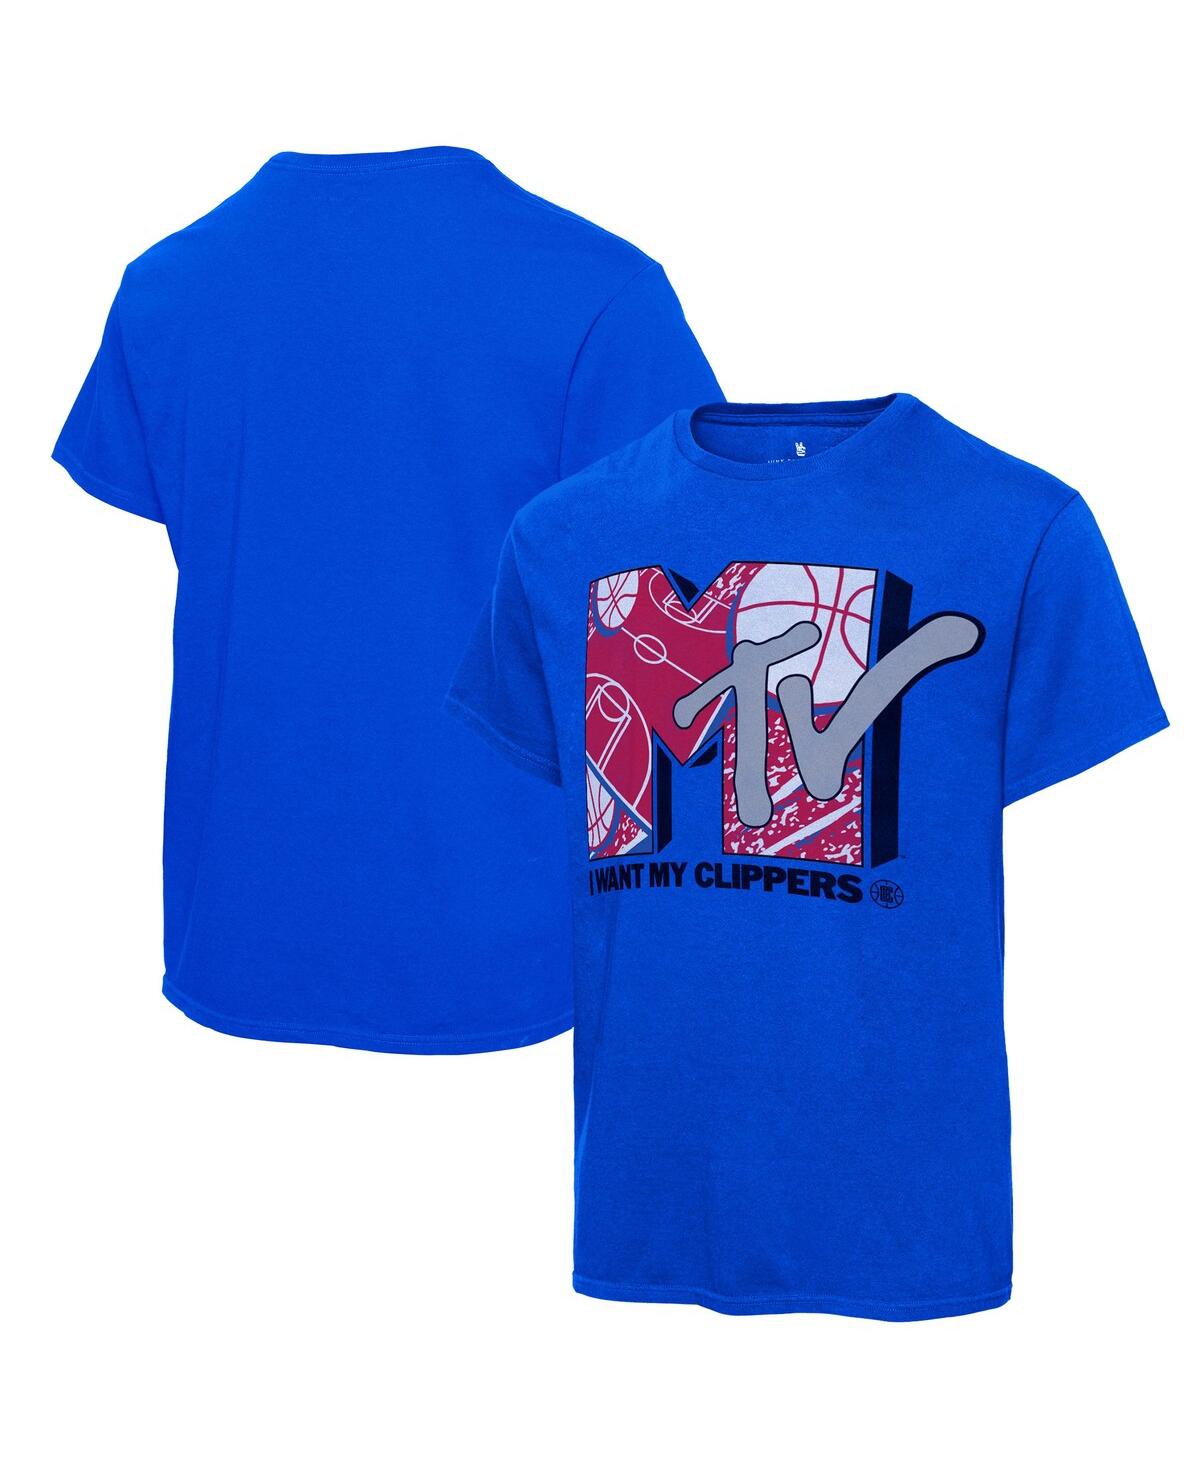 Men's Junk Food Royal La Clippers Nba x Mtv I Want My T-shirt - Royal